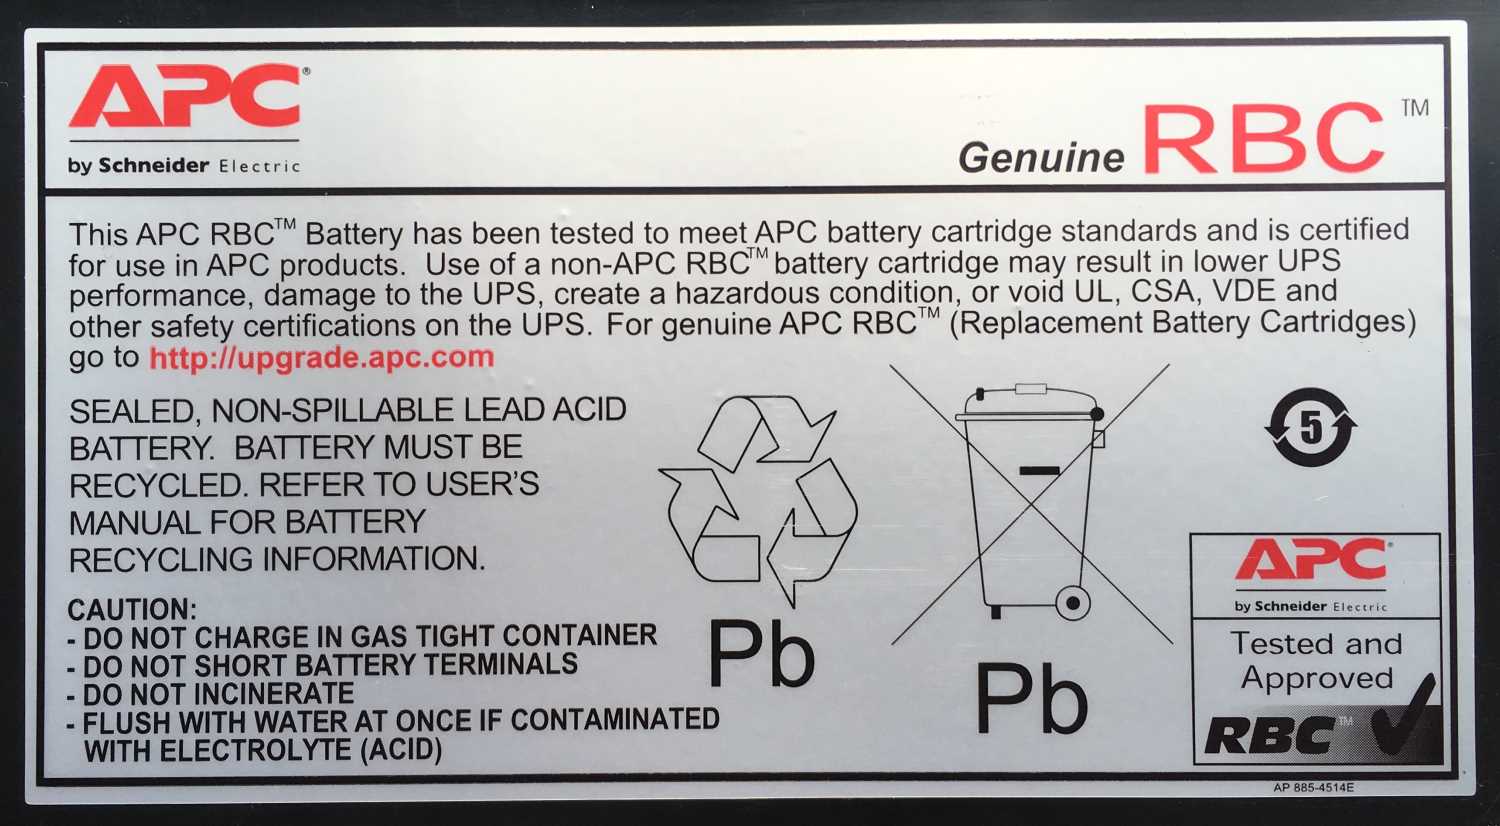 Батарея APC RBC27, серебристый